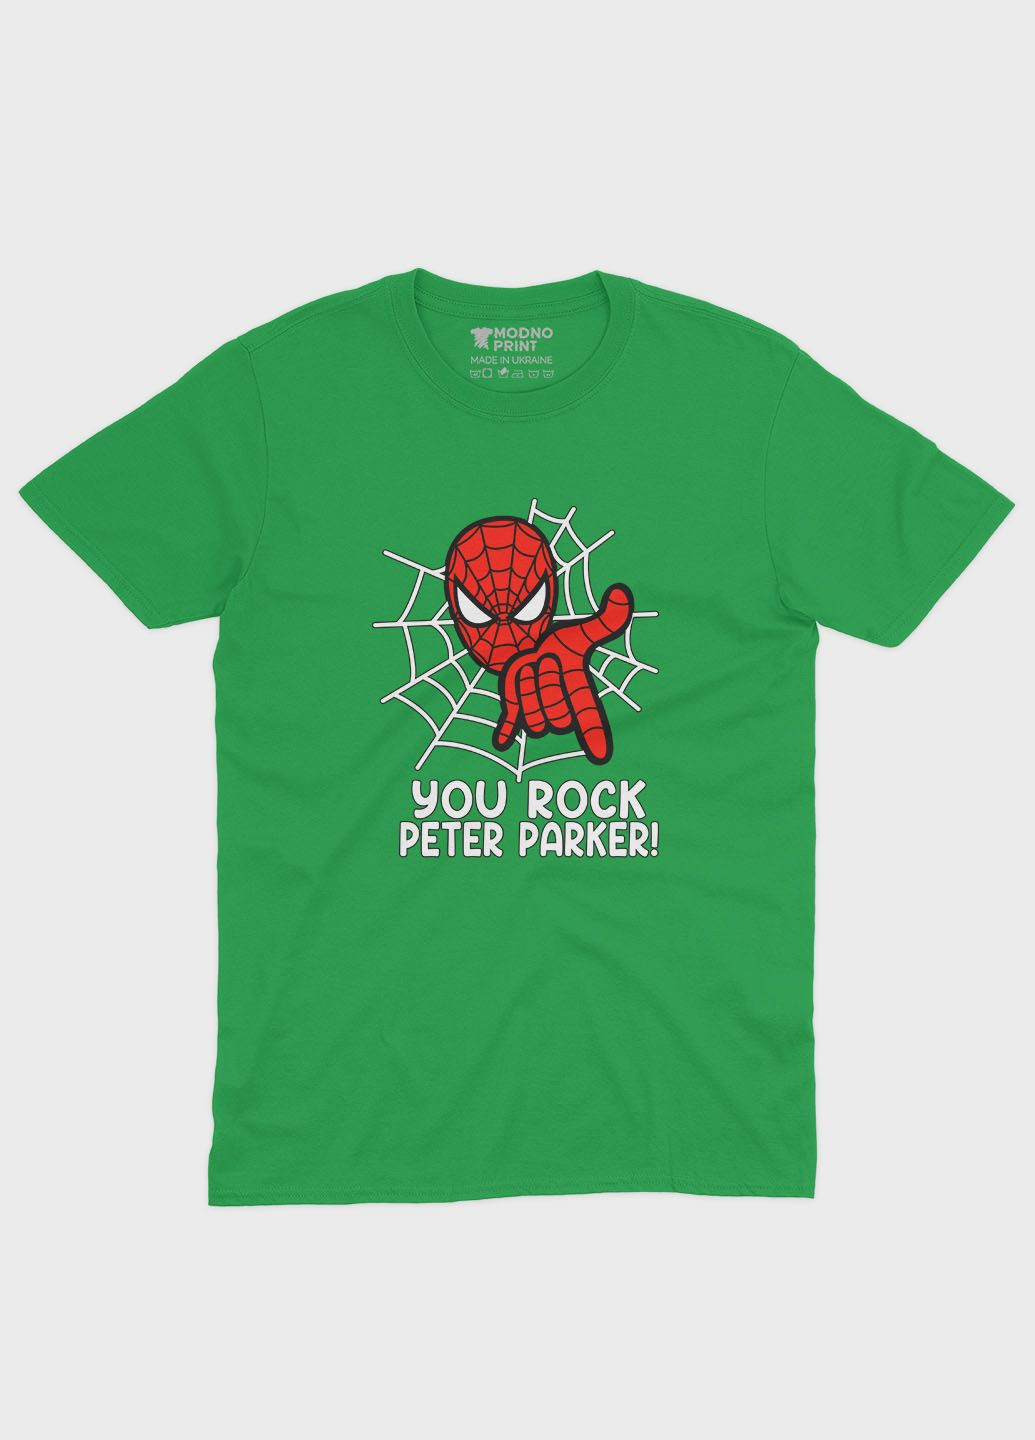 Зеленая демисезонная футболка для девочки с принтом супергероя - человек-паук (ts001-1-keg-006-014-102-g) Modno